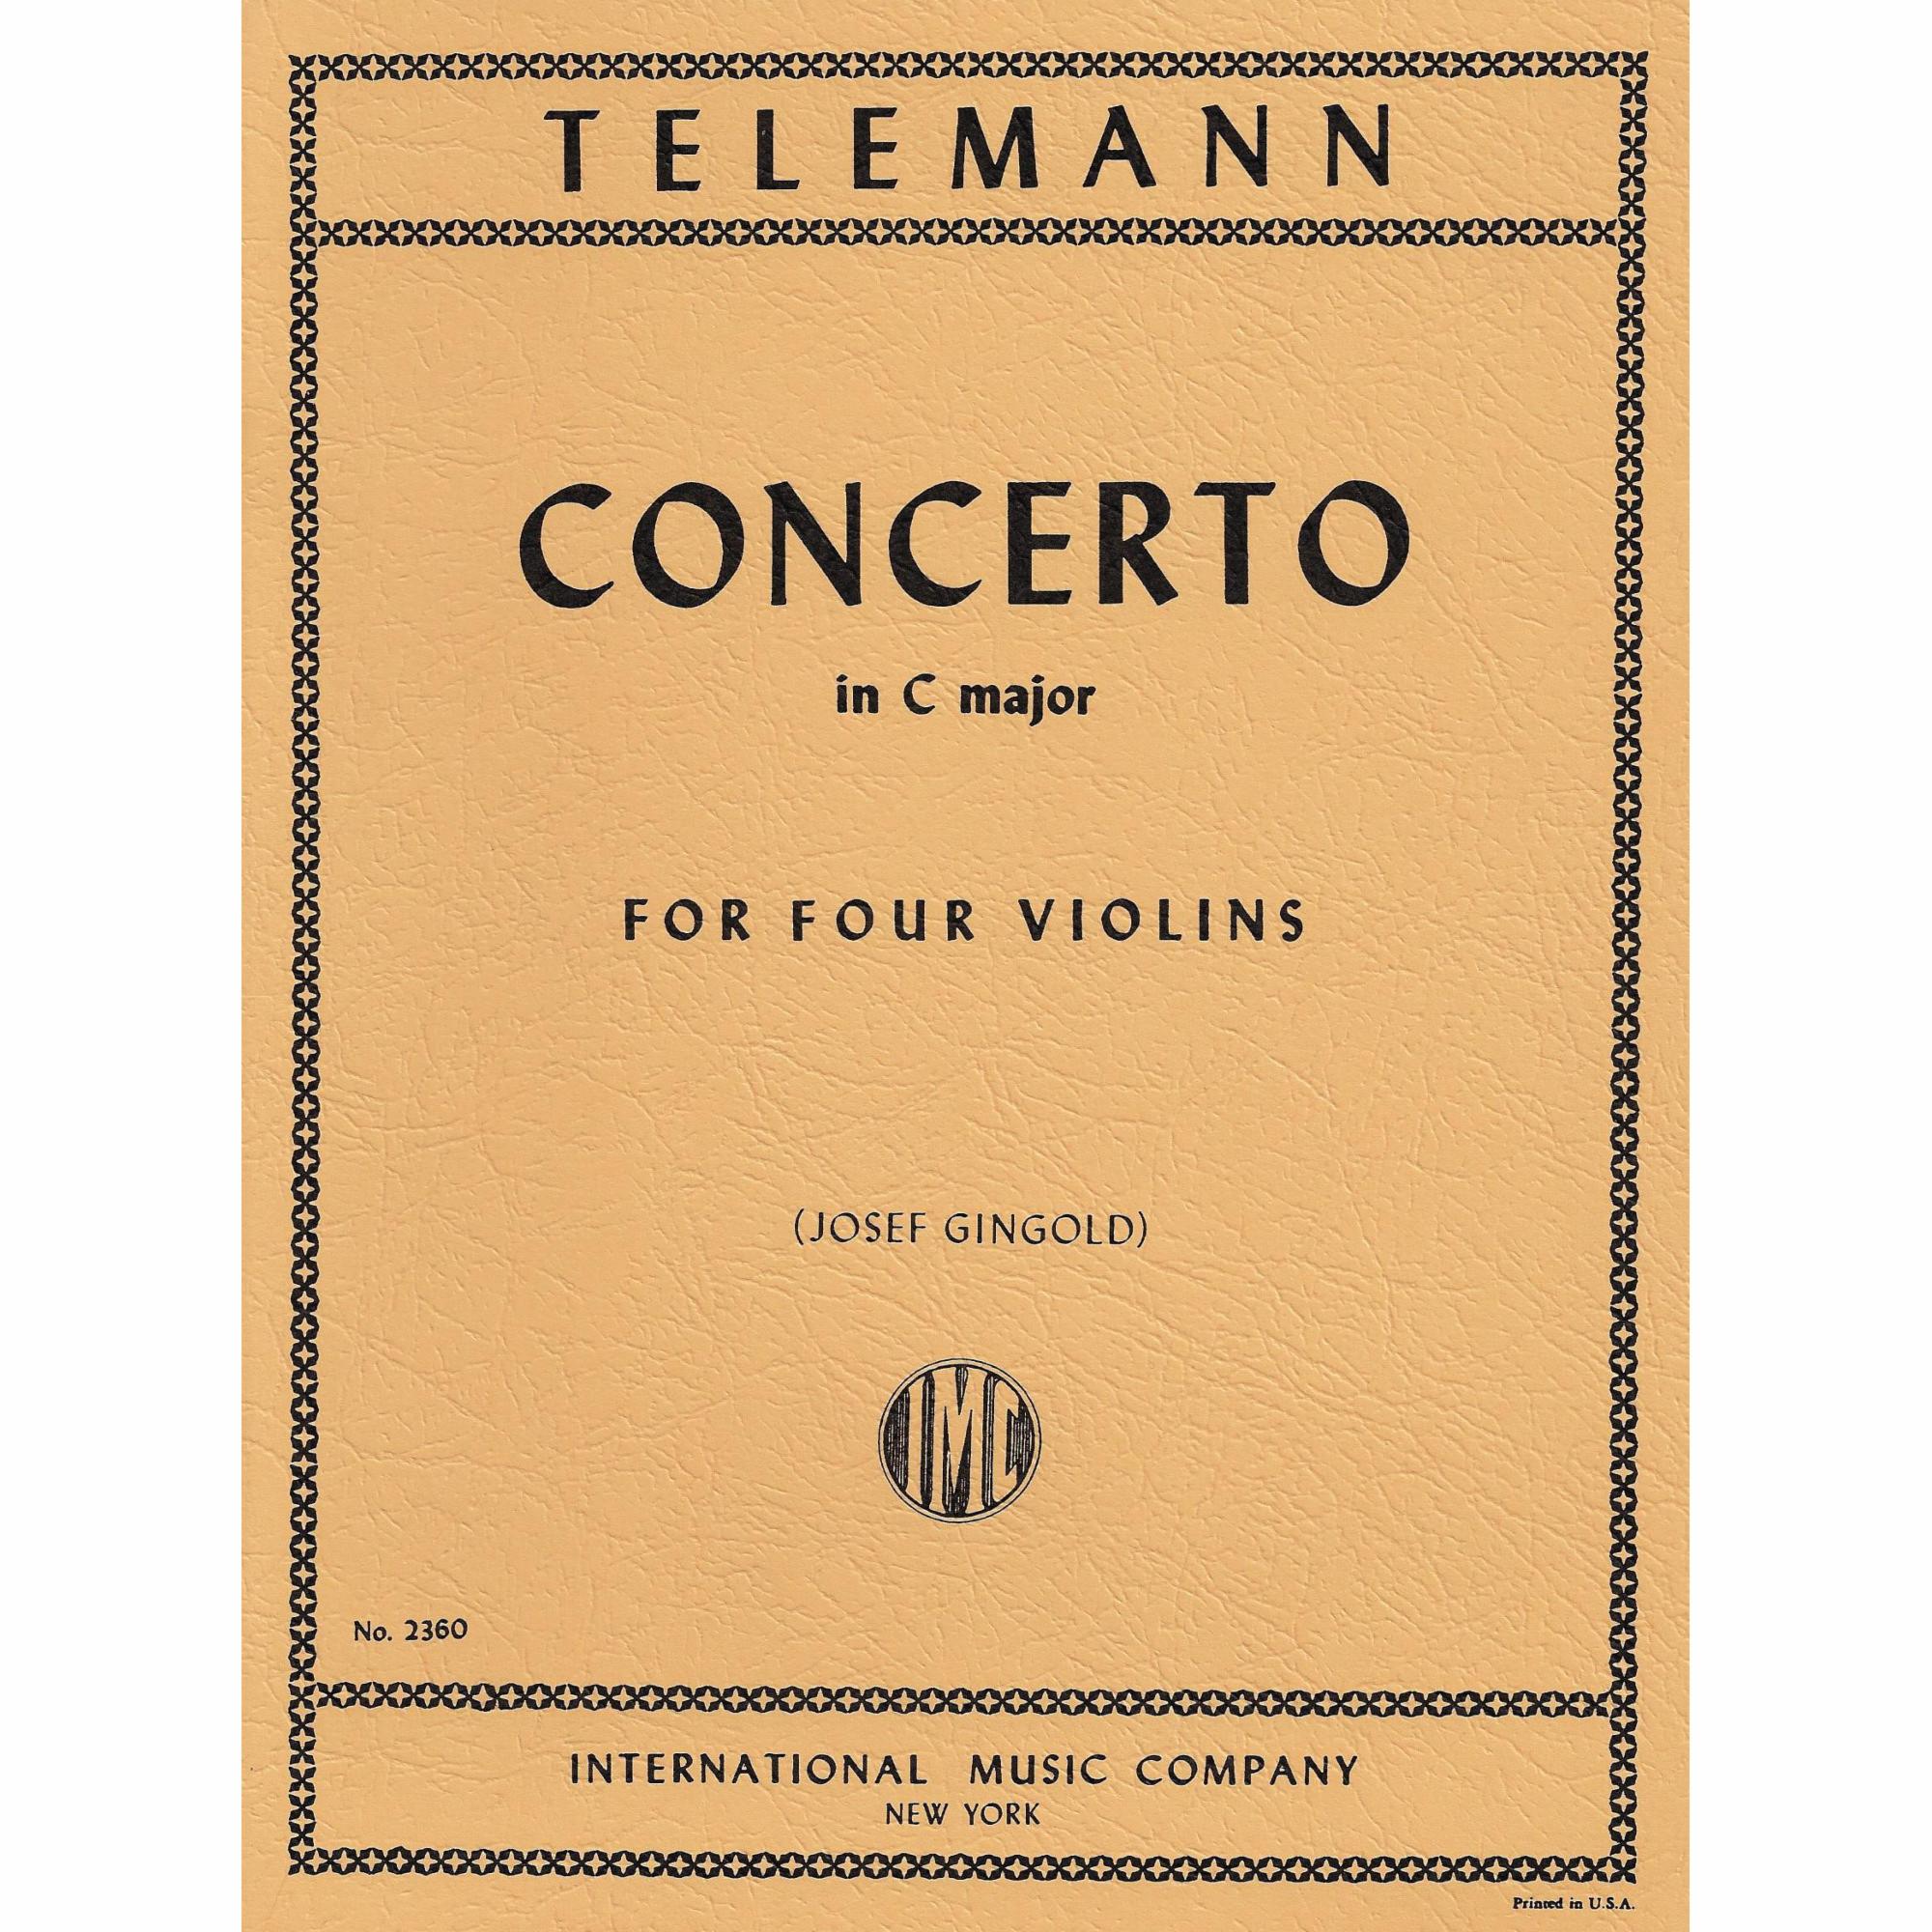 Telemann -- Concerto in C Major for Four Violins